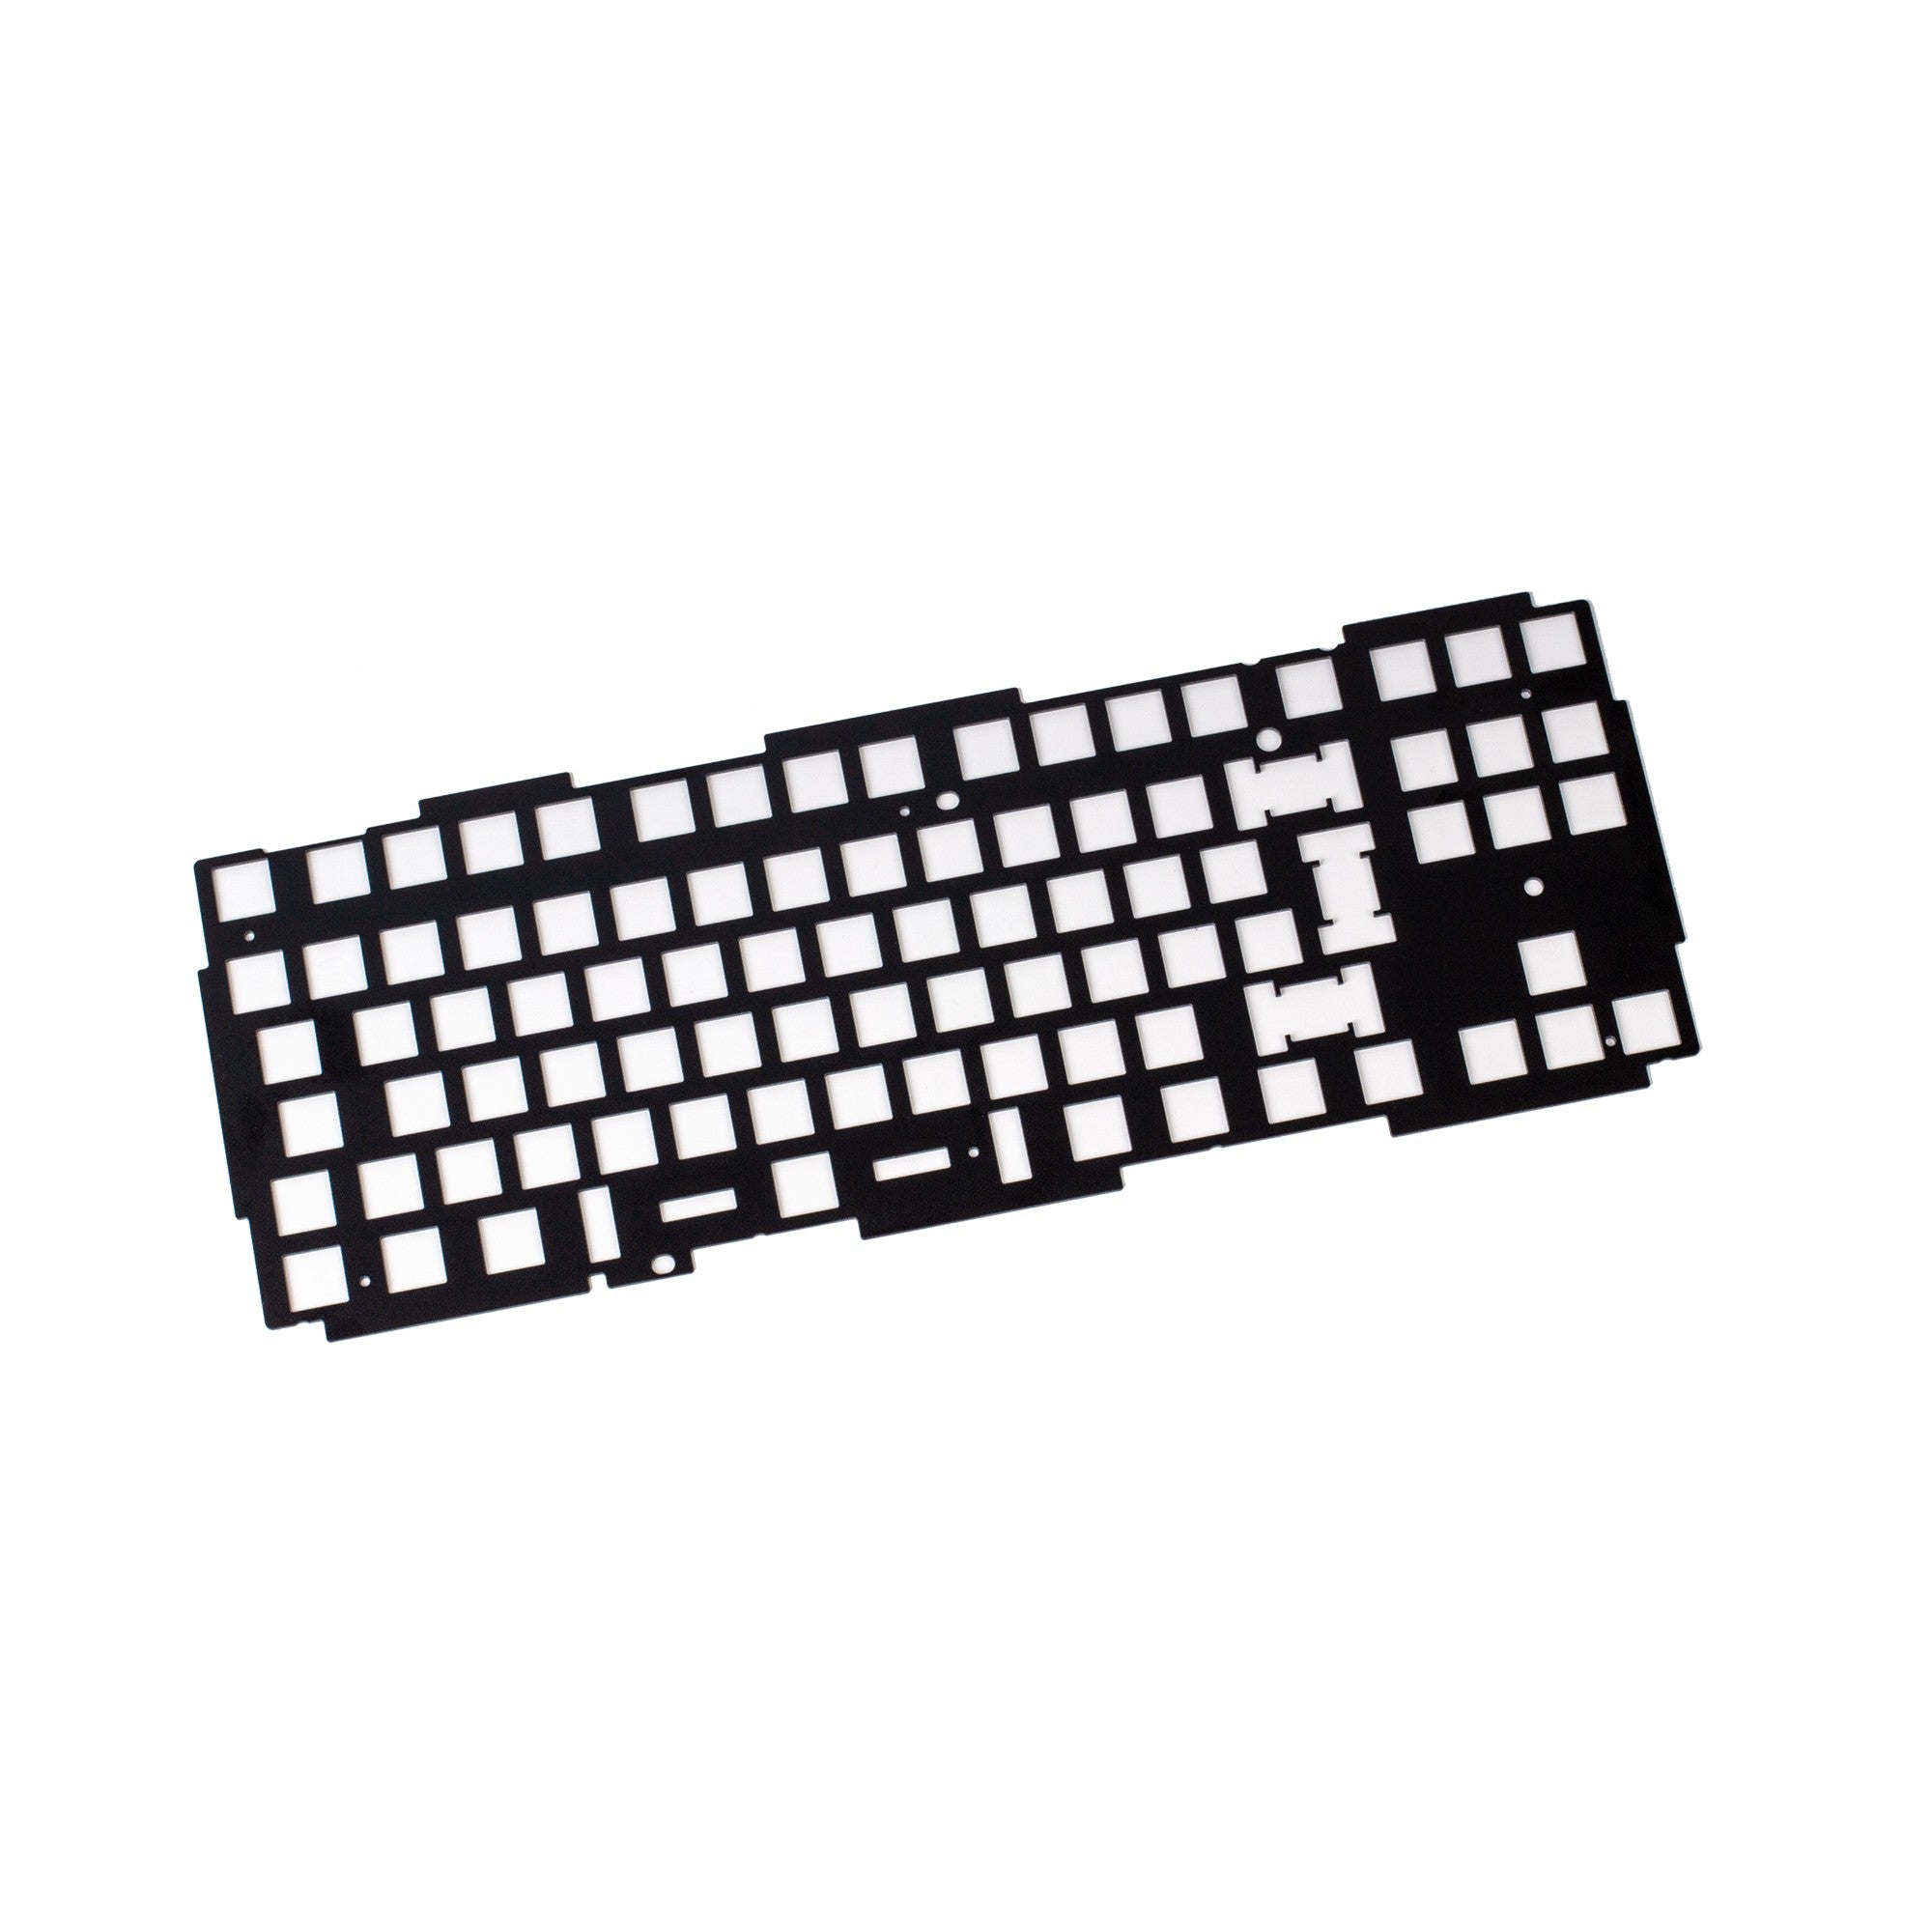 Keychron Q3 keyboard knob aluminum plate ISO layout